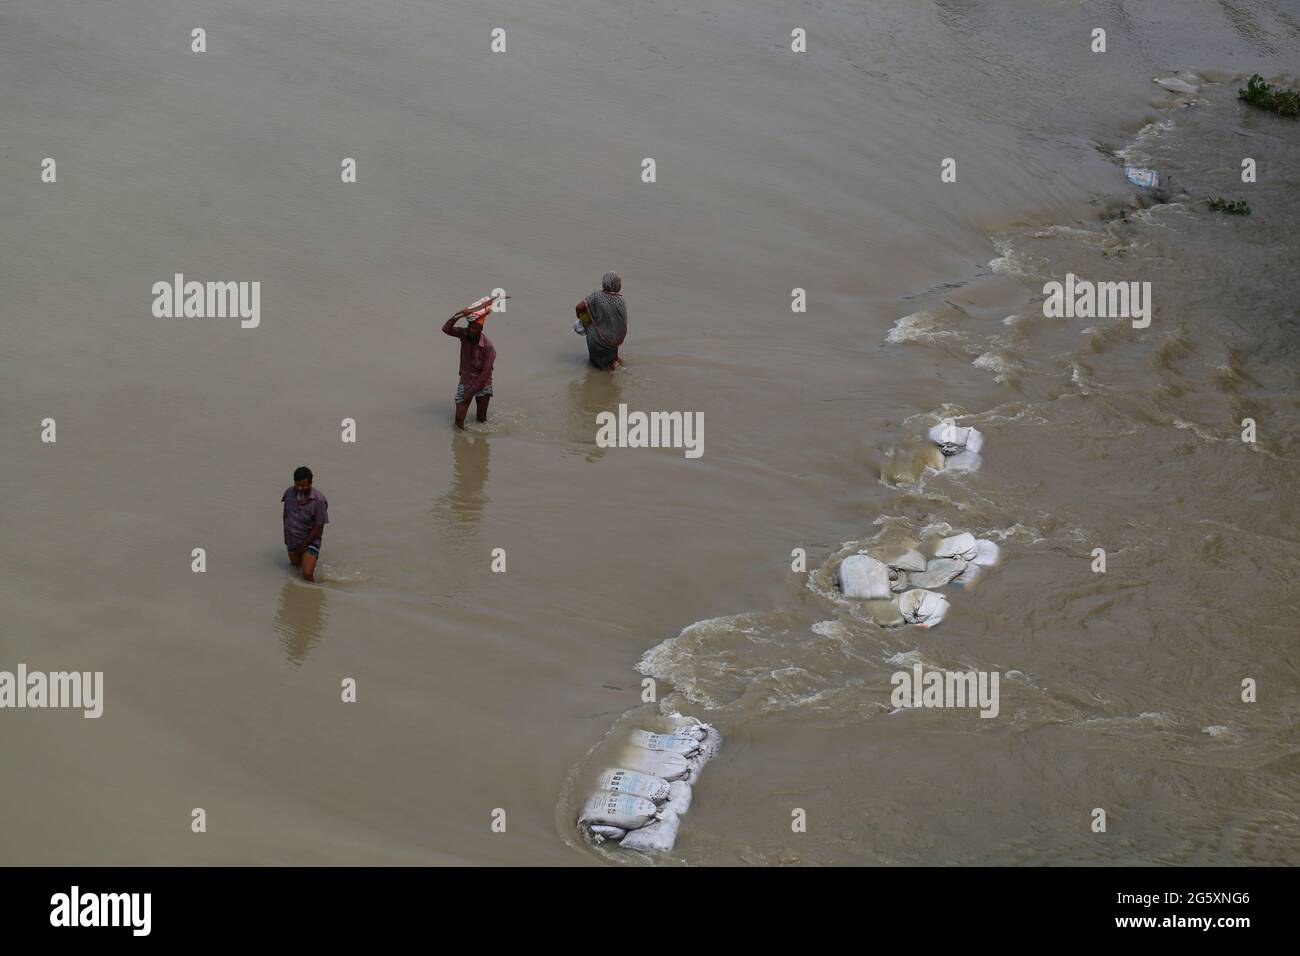 Les gens traversent les eaux de crue lors de l'inondation de la mousson à Munshiganj, près de Dhaka, au Bangladesh, le 28 juillet 2020. Plus de 9.6 millions de personnes ont été touchées par des inondations dues à la mousson, qui ont dévasté de vastes régions de l'Inde, du Bangladesh et du Népal. Banque D'Images